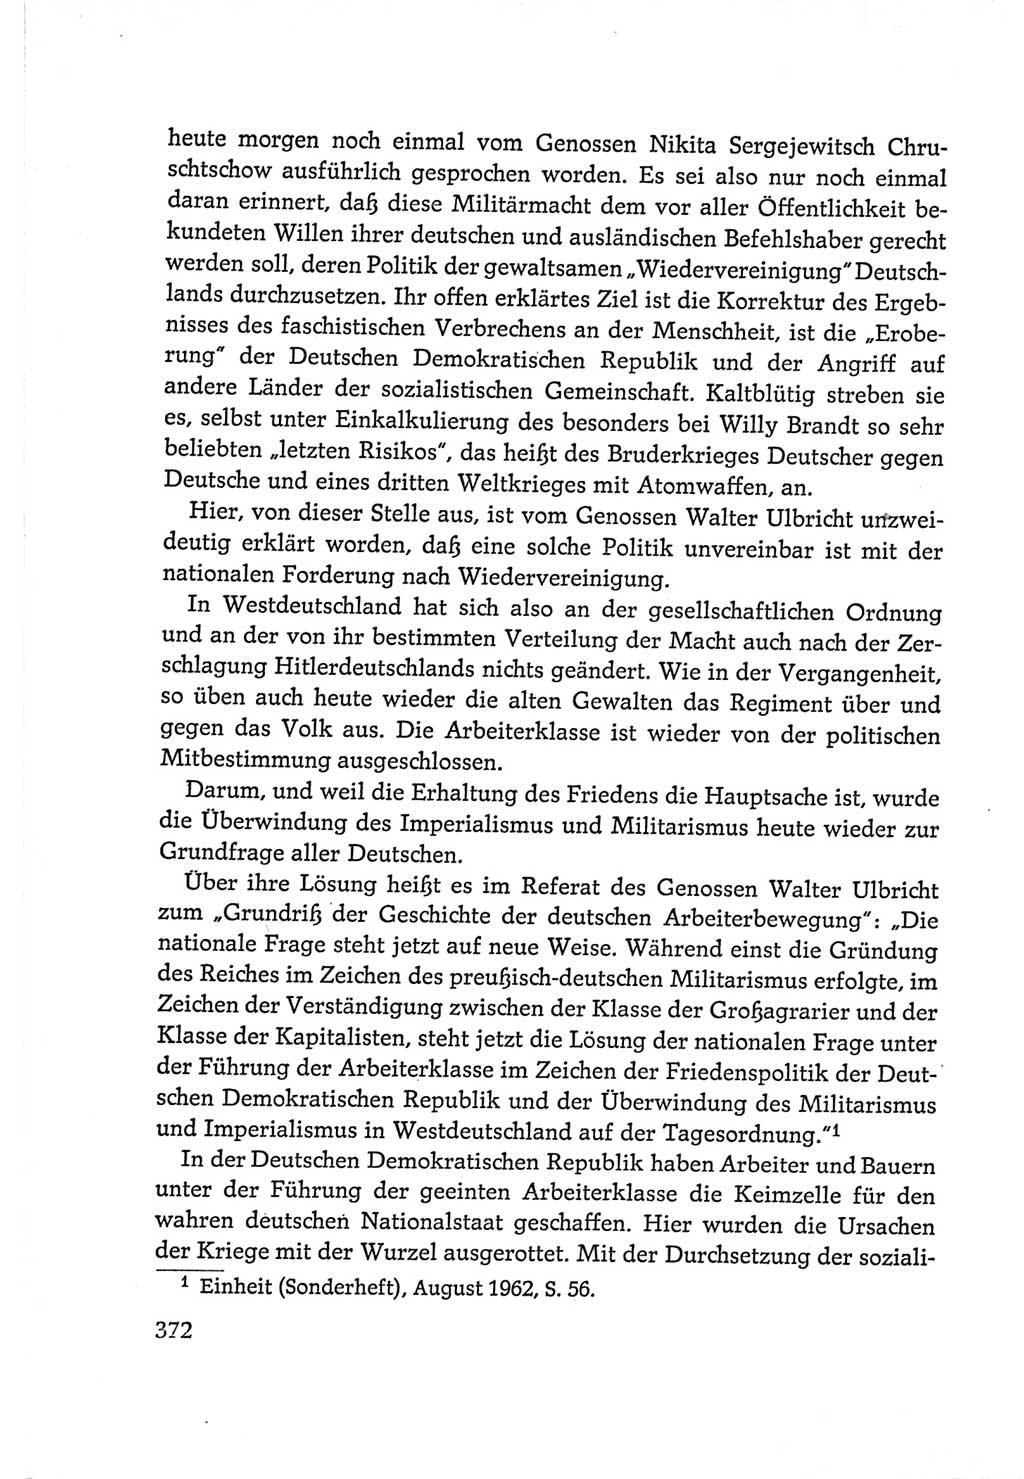 Protokoll der Verhandlungen des Ⅵ. Parteitages der Sozialistischen Einheitspartei Deutschlands (SED) [Deutsche Demokratische Republik (DDR)] 1963, Band Ⅰ, Seite 372 (Prot. Verh. Ⅵ. PT SED DDR 1963, Bd. Ⅰ, S. 372)